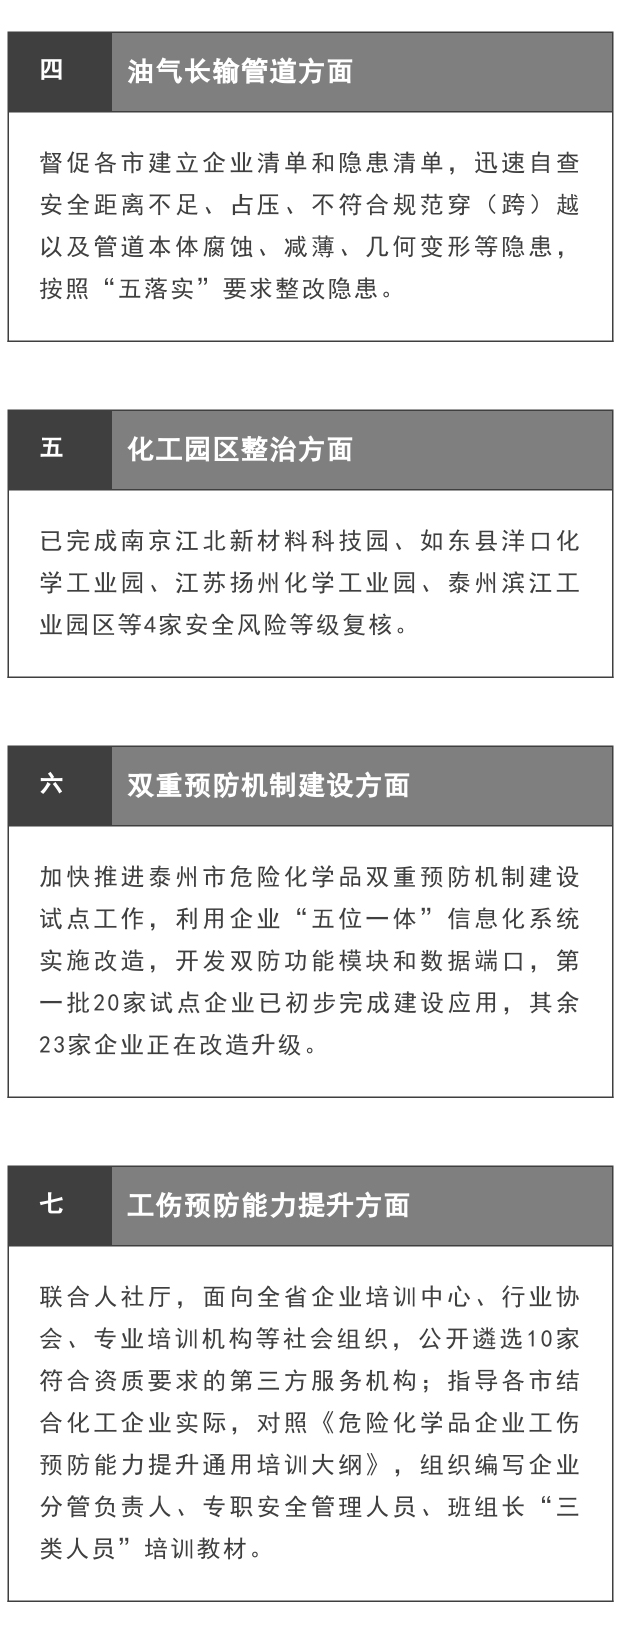 【政策法规】江苏扎实推进危险化学品安全风险集中治理工作(图2)